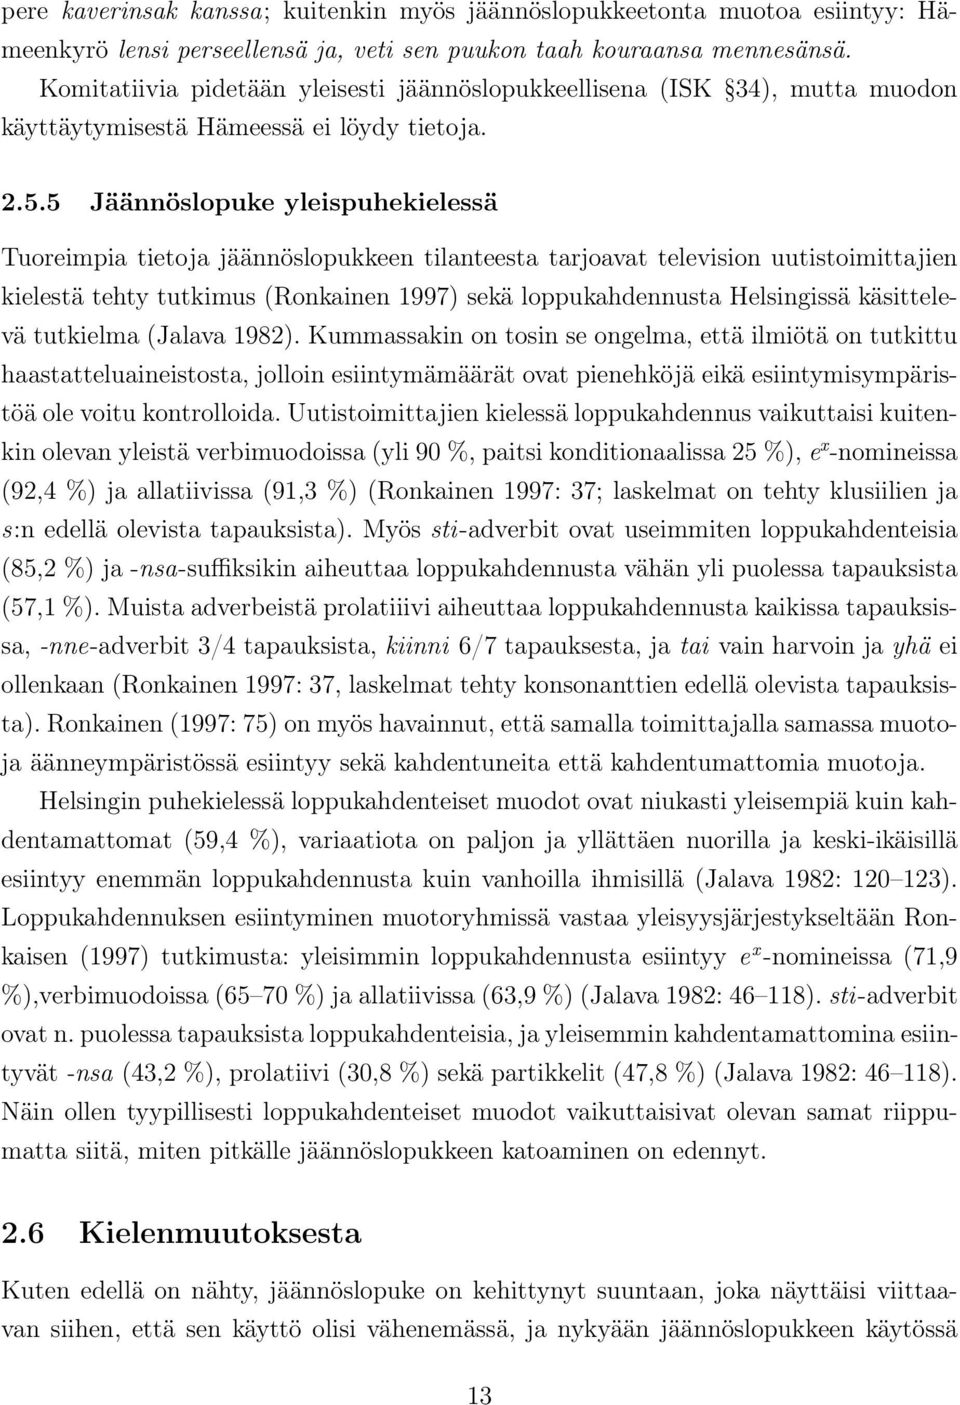 5 Jäännöslopuke yleispuhekielessä Tuoreimpia tietoja jäännöslopukkeen tilanteesta tarjoavat television uutistoimittajien kielestä tehty tutkimus (Ronkainen 1997) sekä loppukahdennusta Helsingissä